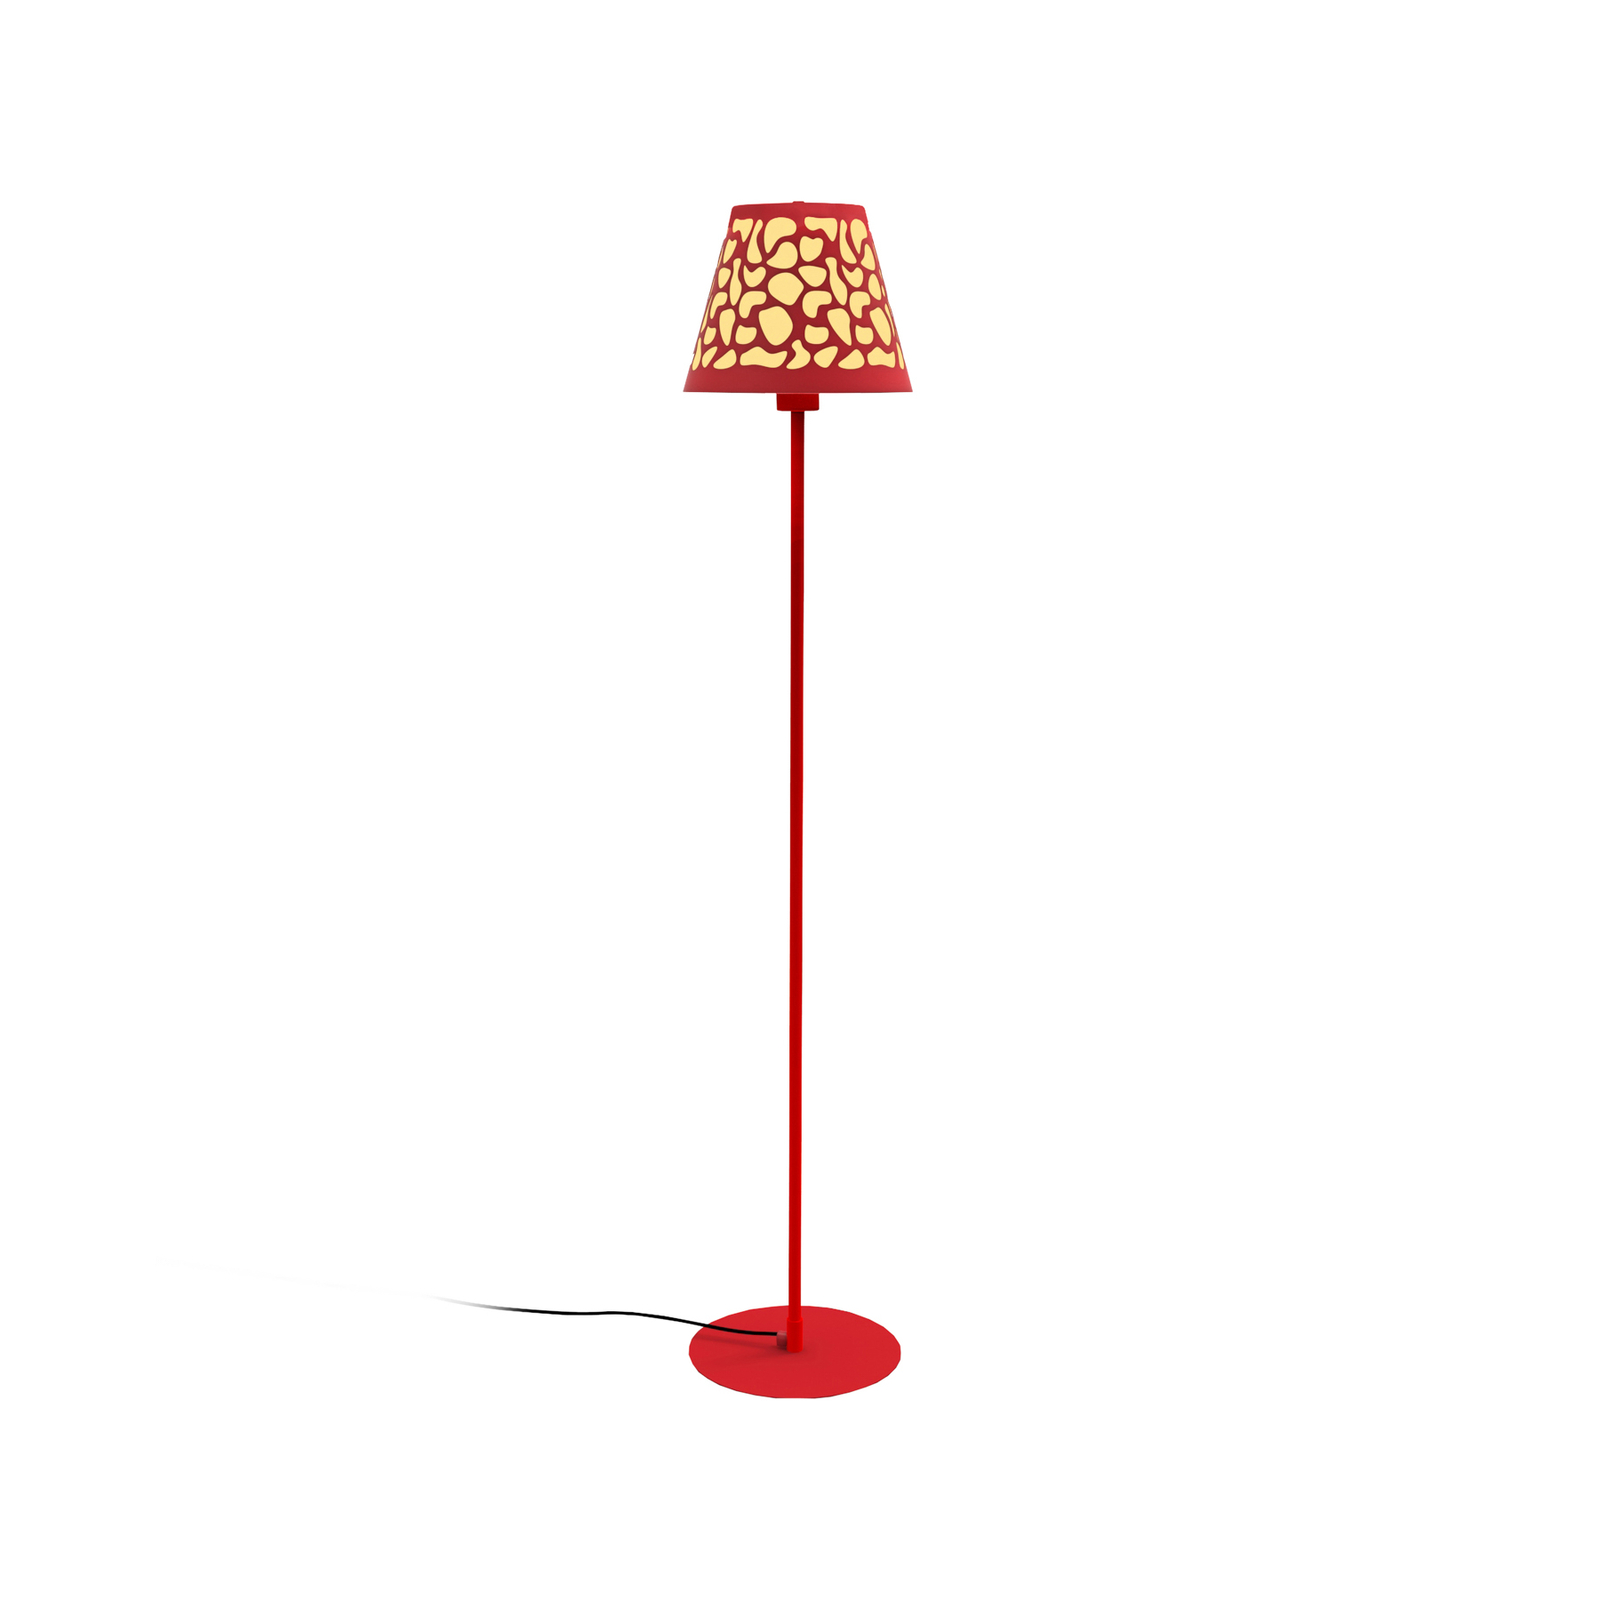 Aluminor Nihoa gulvlampe med hulmønster, rød/gul